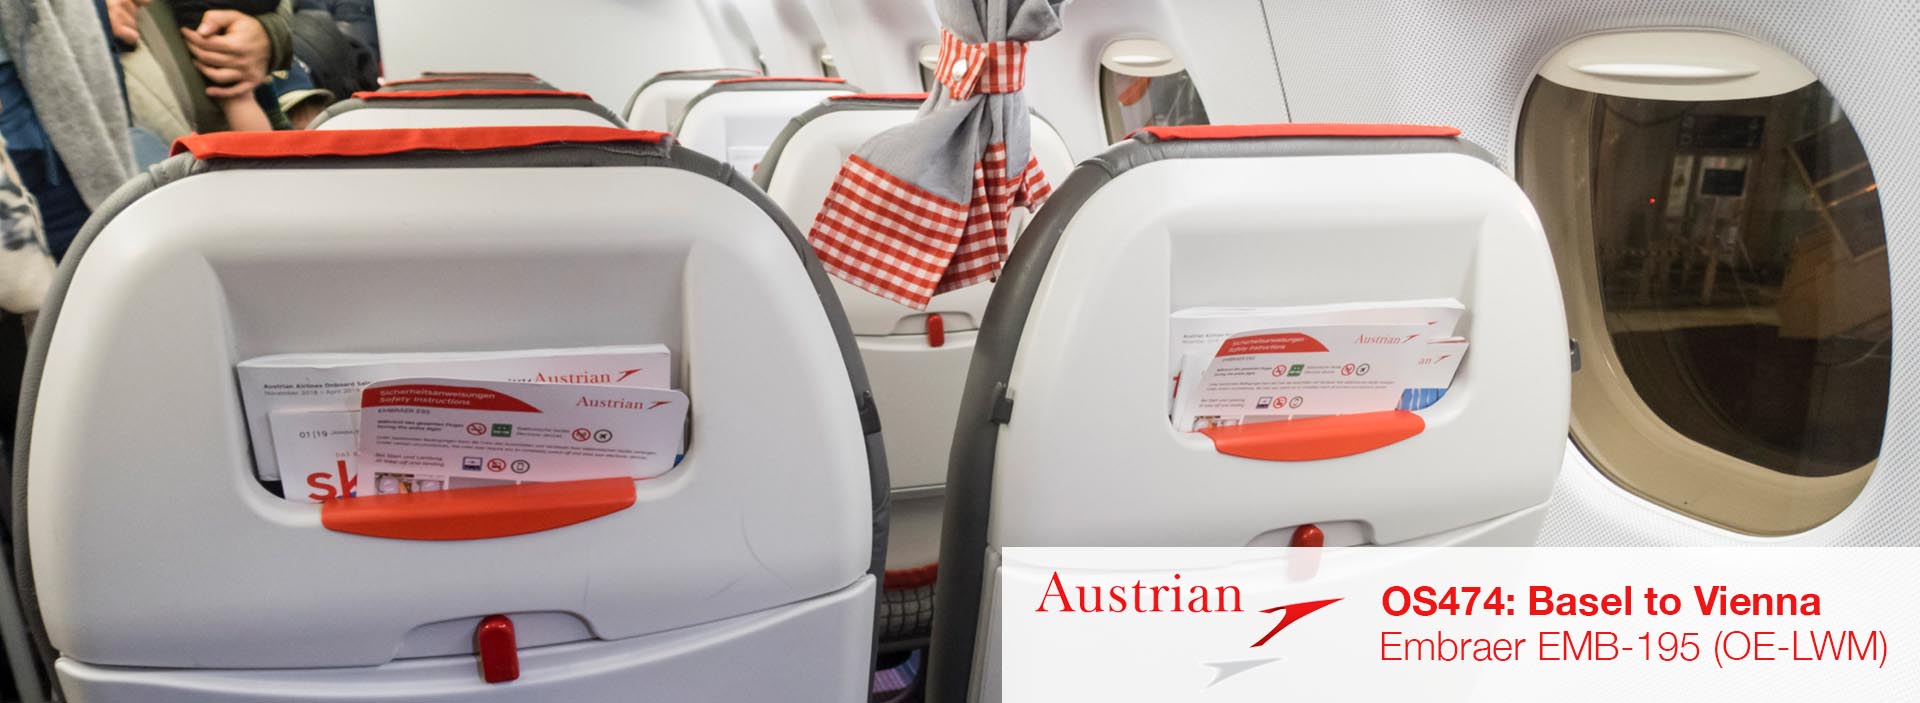 Rückblick: Austrian Airlines EMB-195 Economy Class von Basel nach Wien